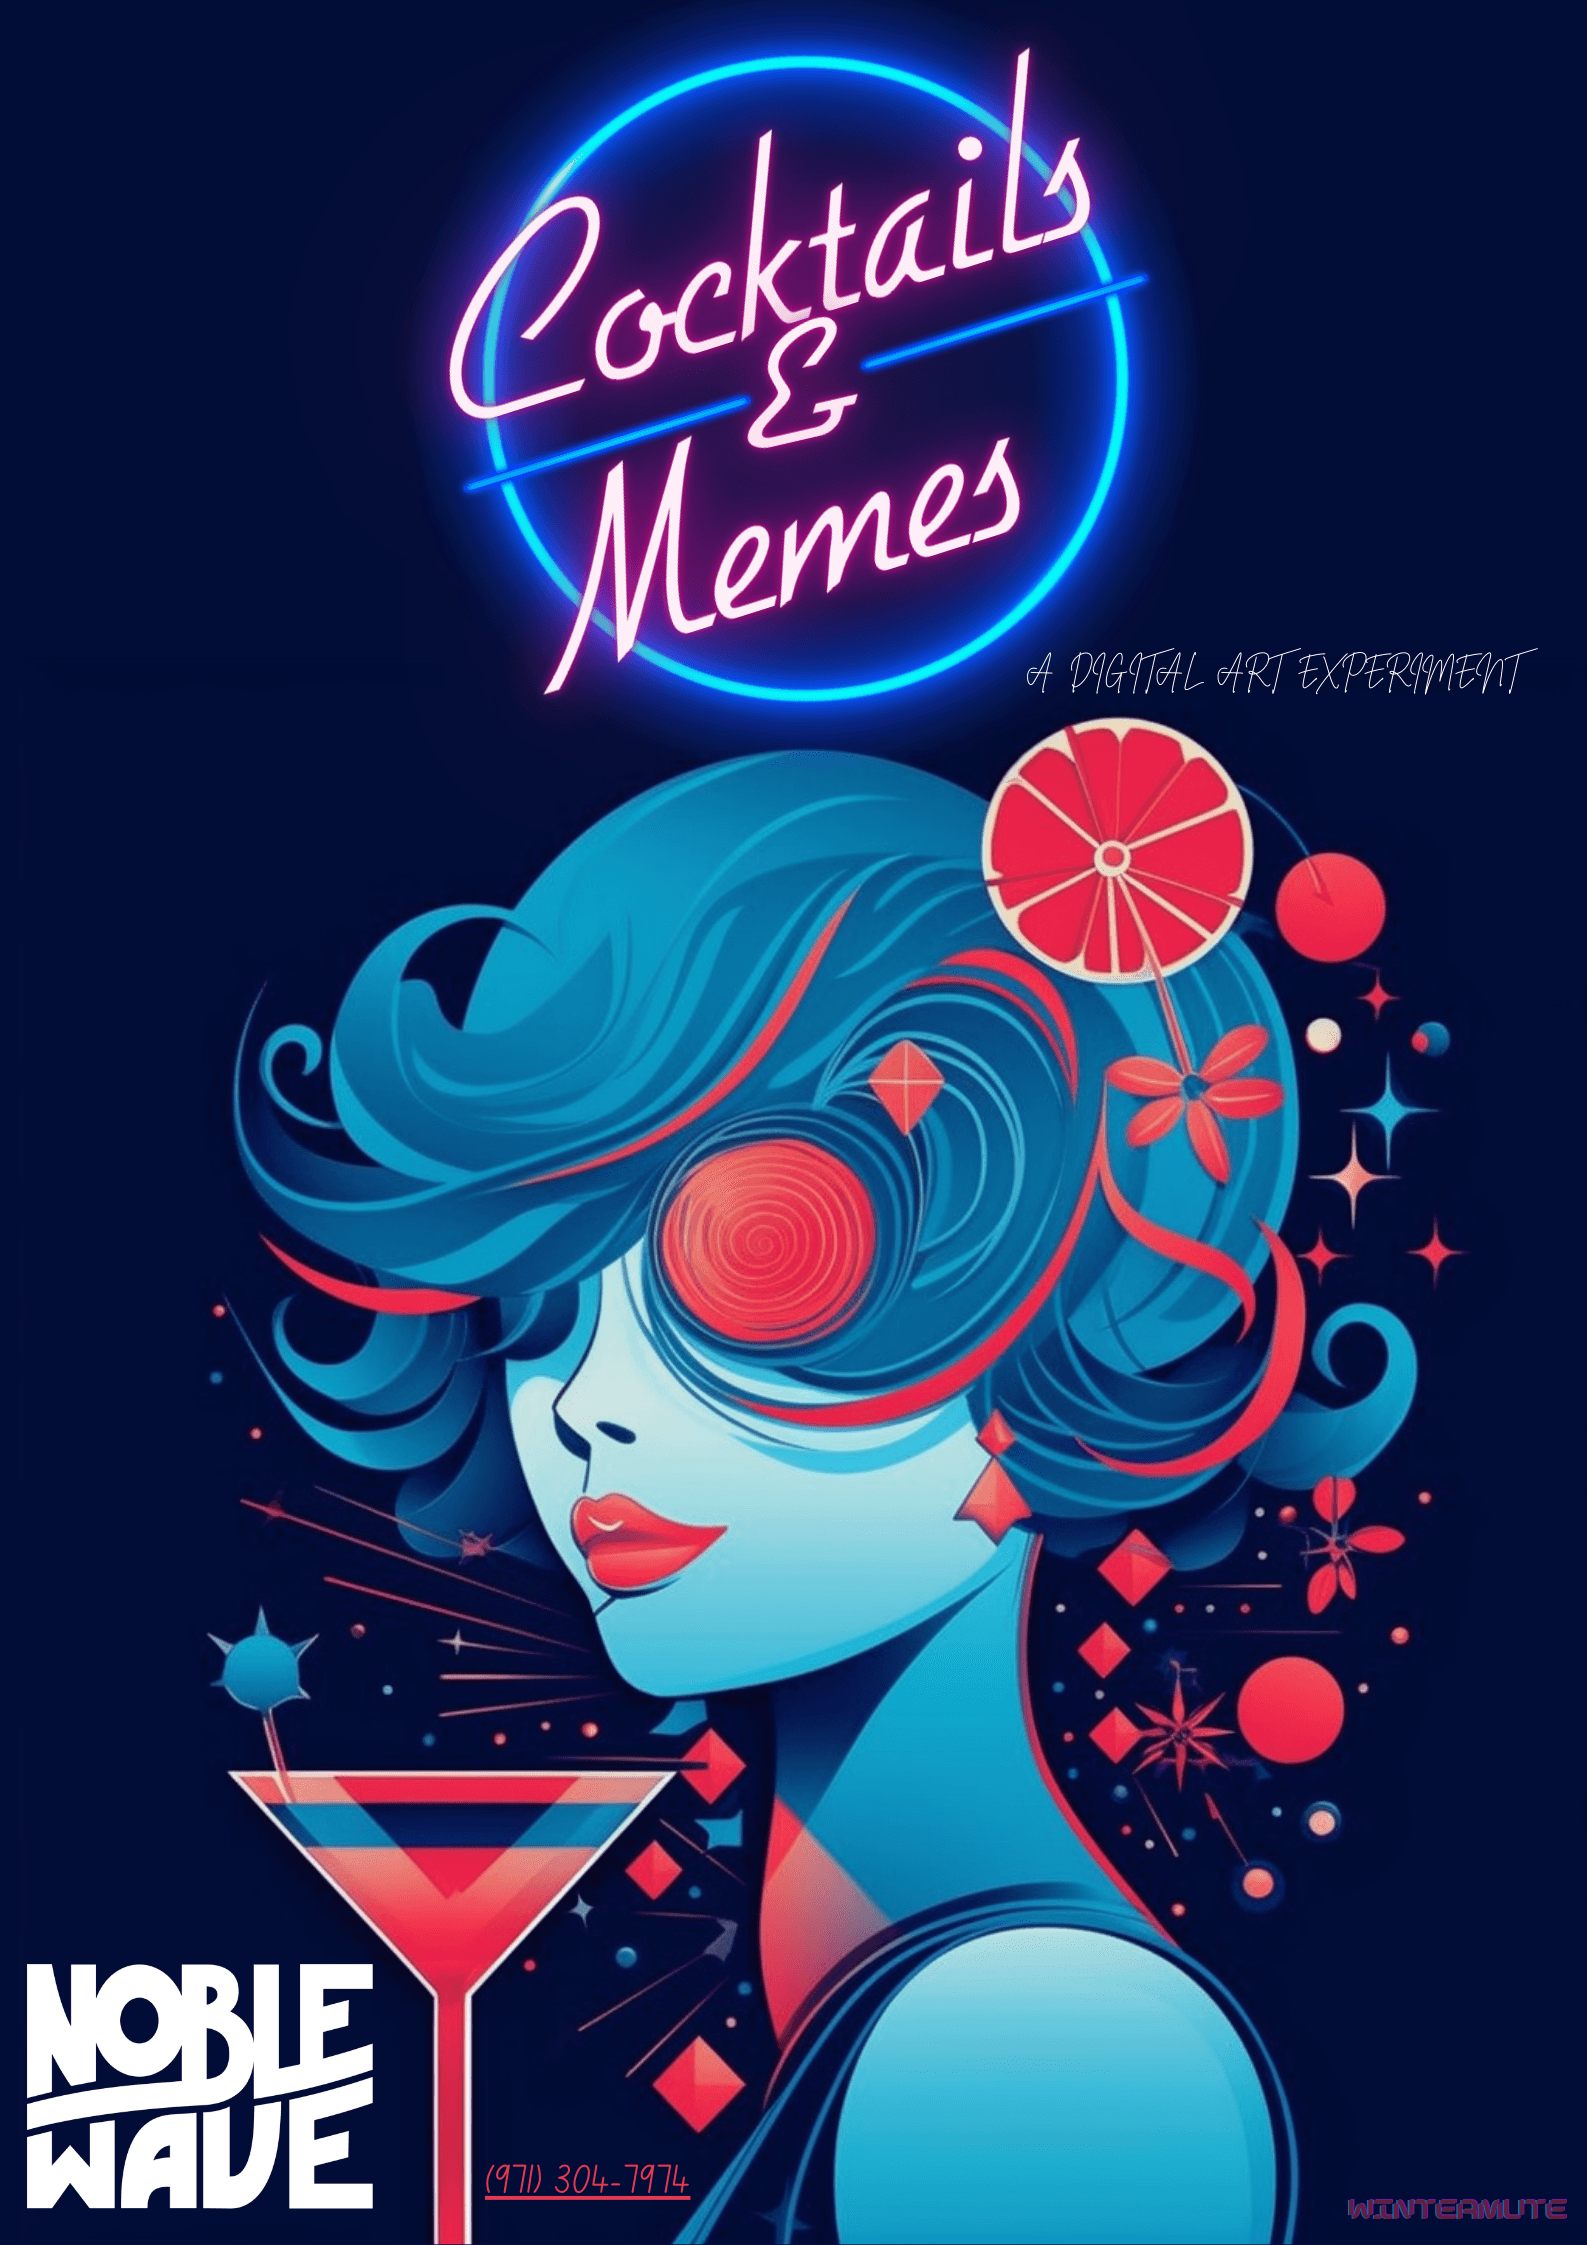 Cocktails & Memes